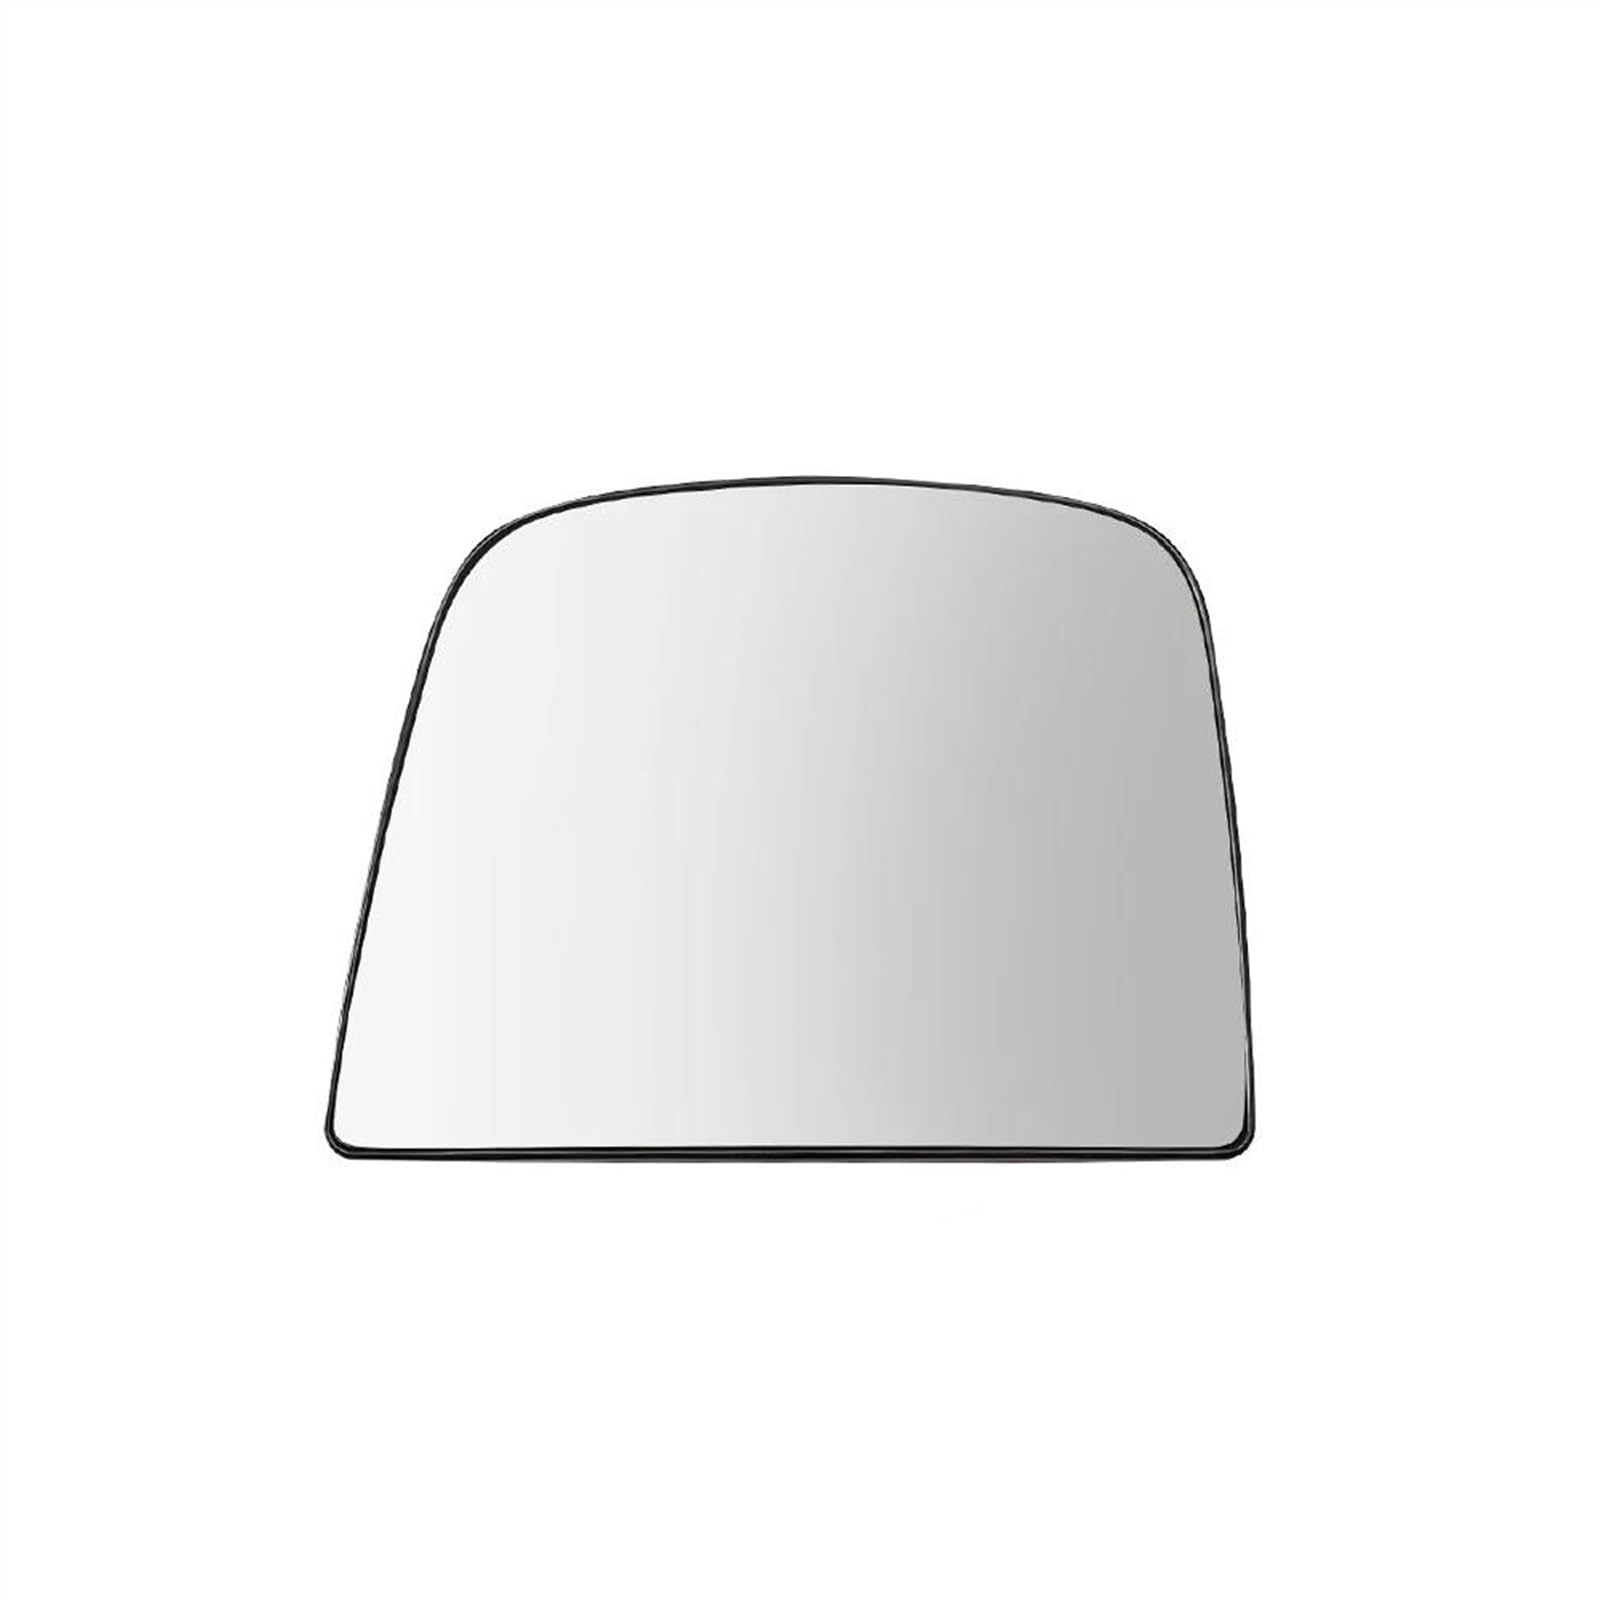 Beheiztes Seitenspiegelglas Fürs Auto Für C&hevrolet Für Chevy Für Express 2008-2020 2021 2022(links) von KMAGE